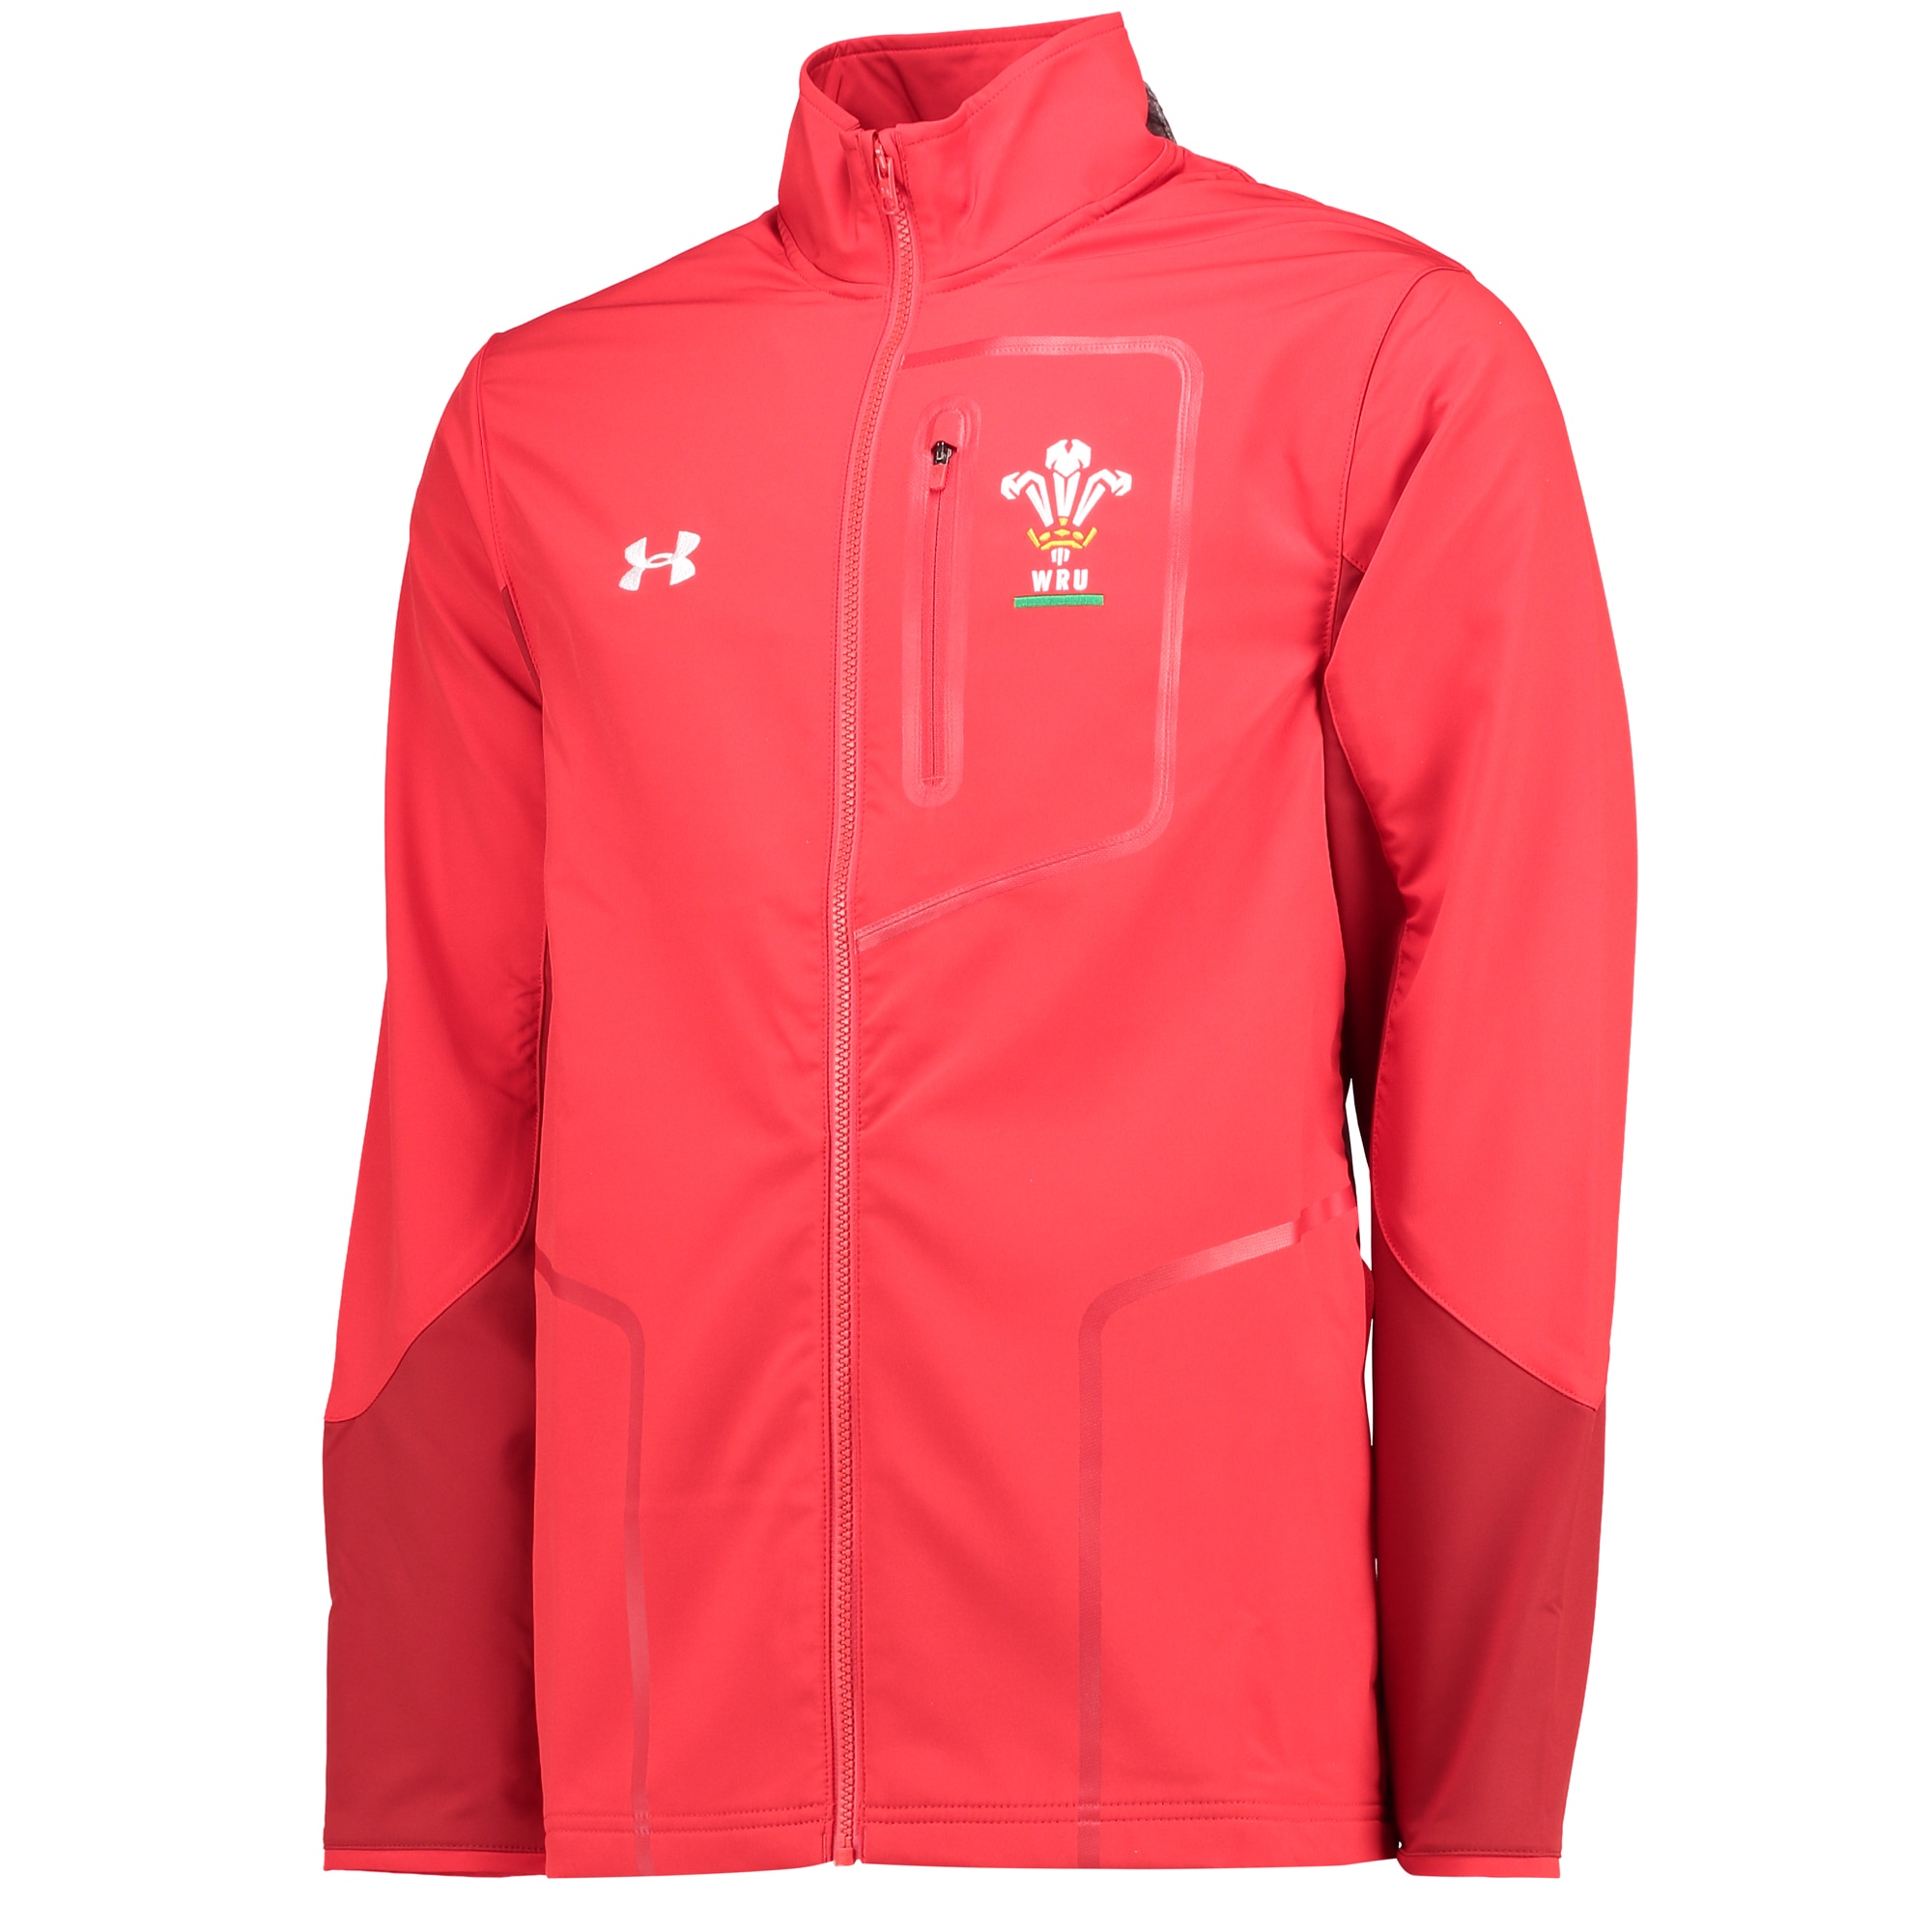 Welsh Rugby Presentation Jacket - Red 